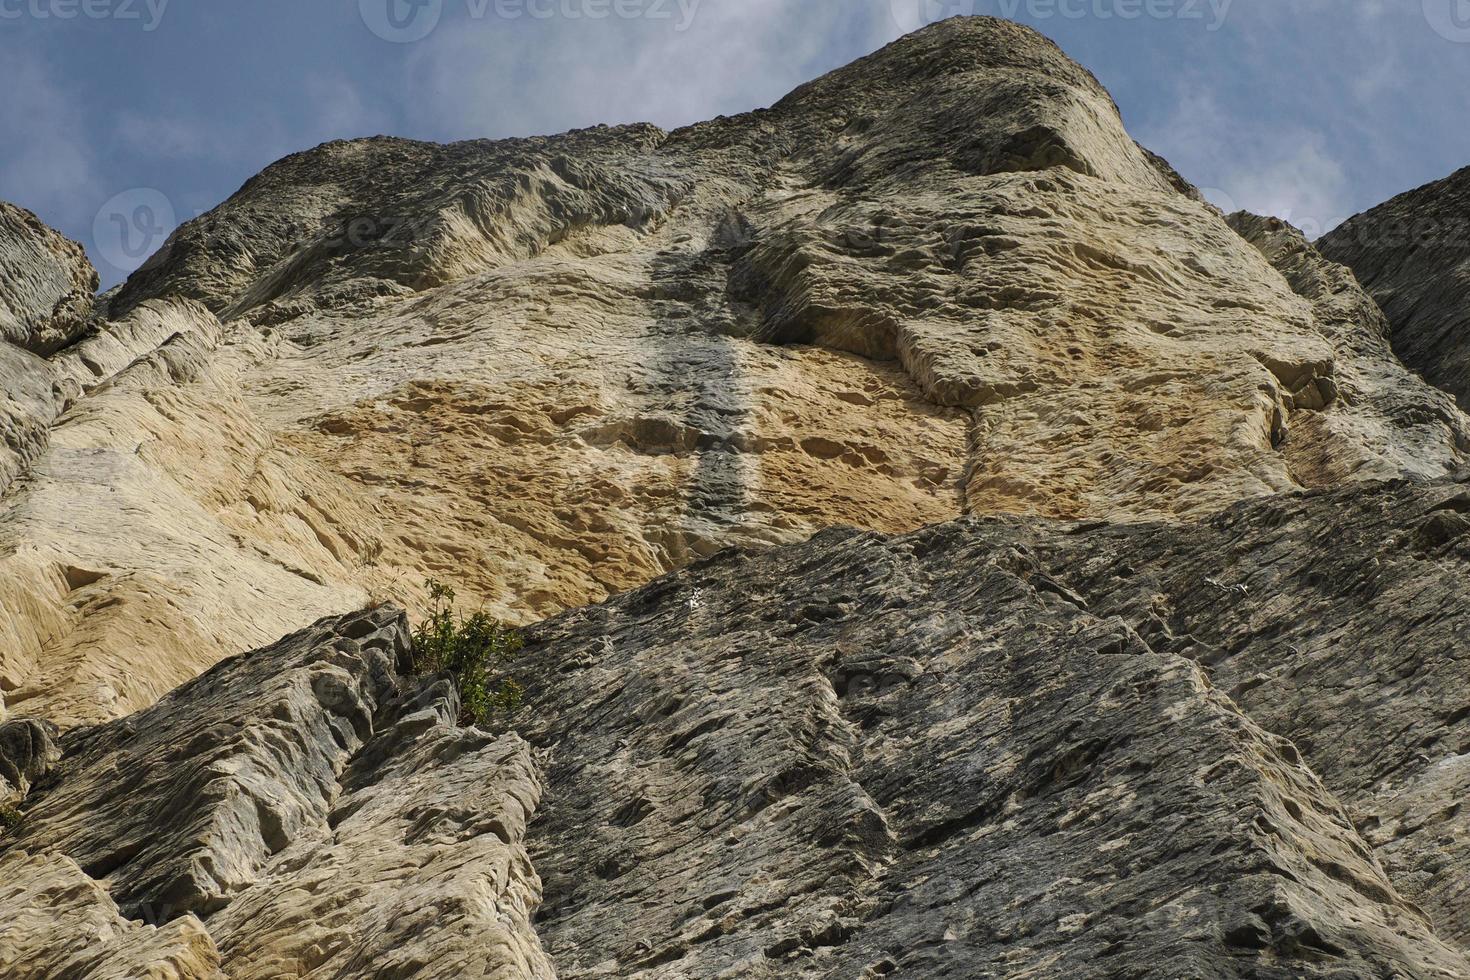 pedra bismantova uma formação rochosa nos apeninos toscanos-emilianos foto